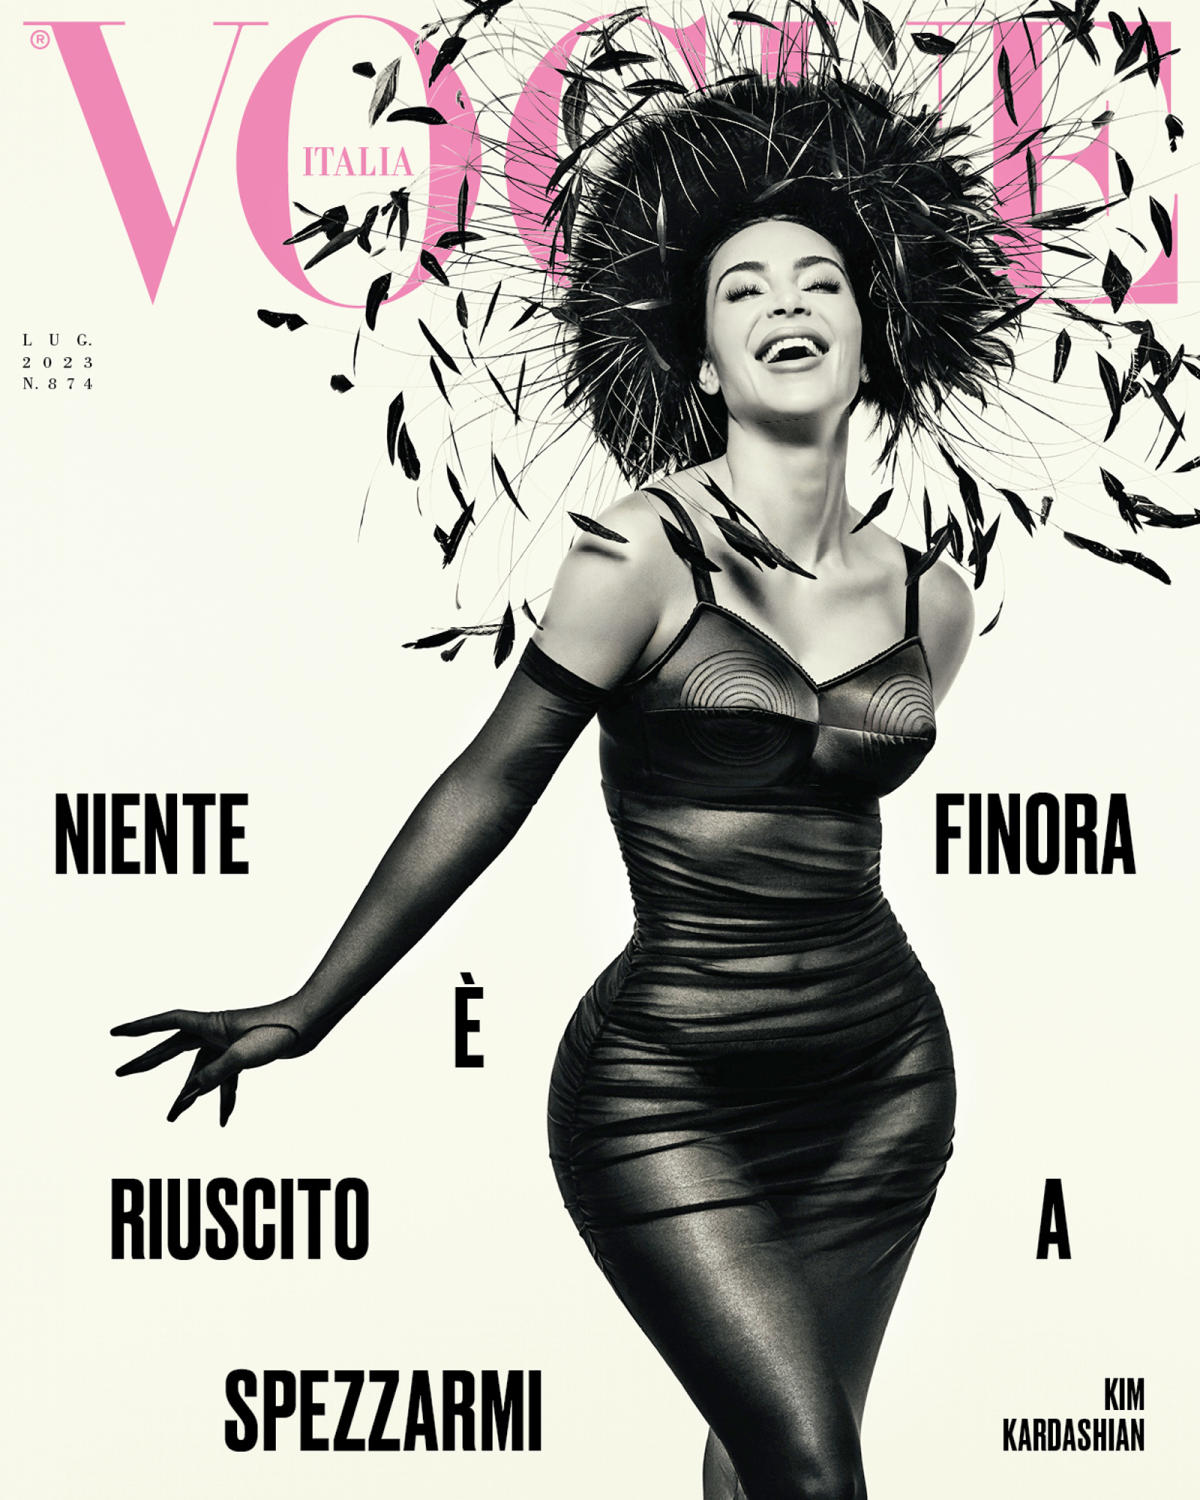 كيم كارداشيان تنتقل إلى هوليوود القديمة في فيلم ‘Vogue Italia’ لأنها تثير اهتمامًا جديدًا